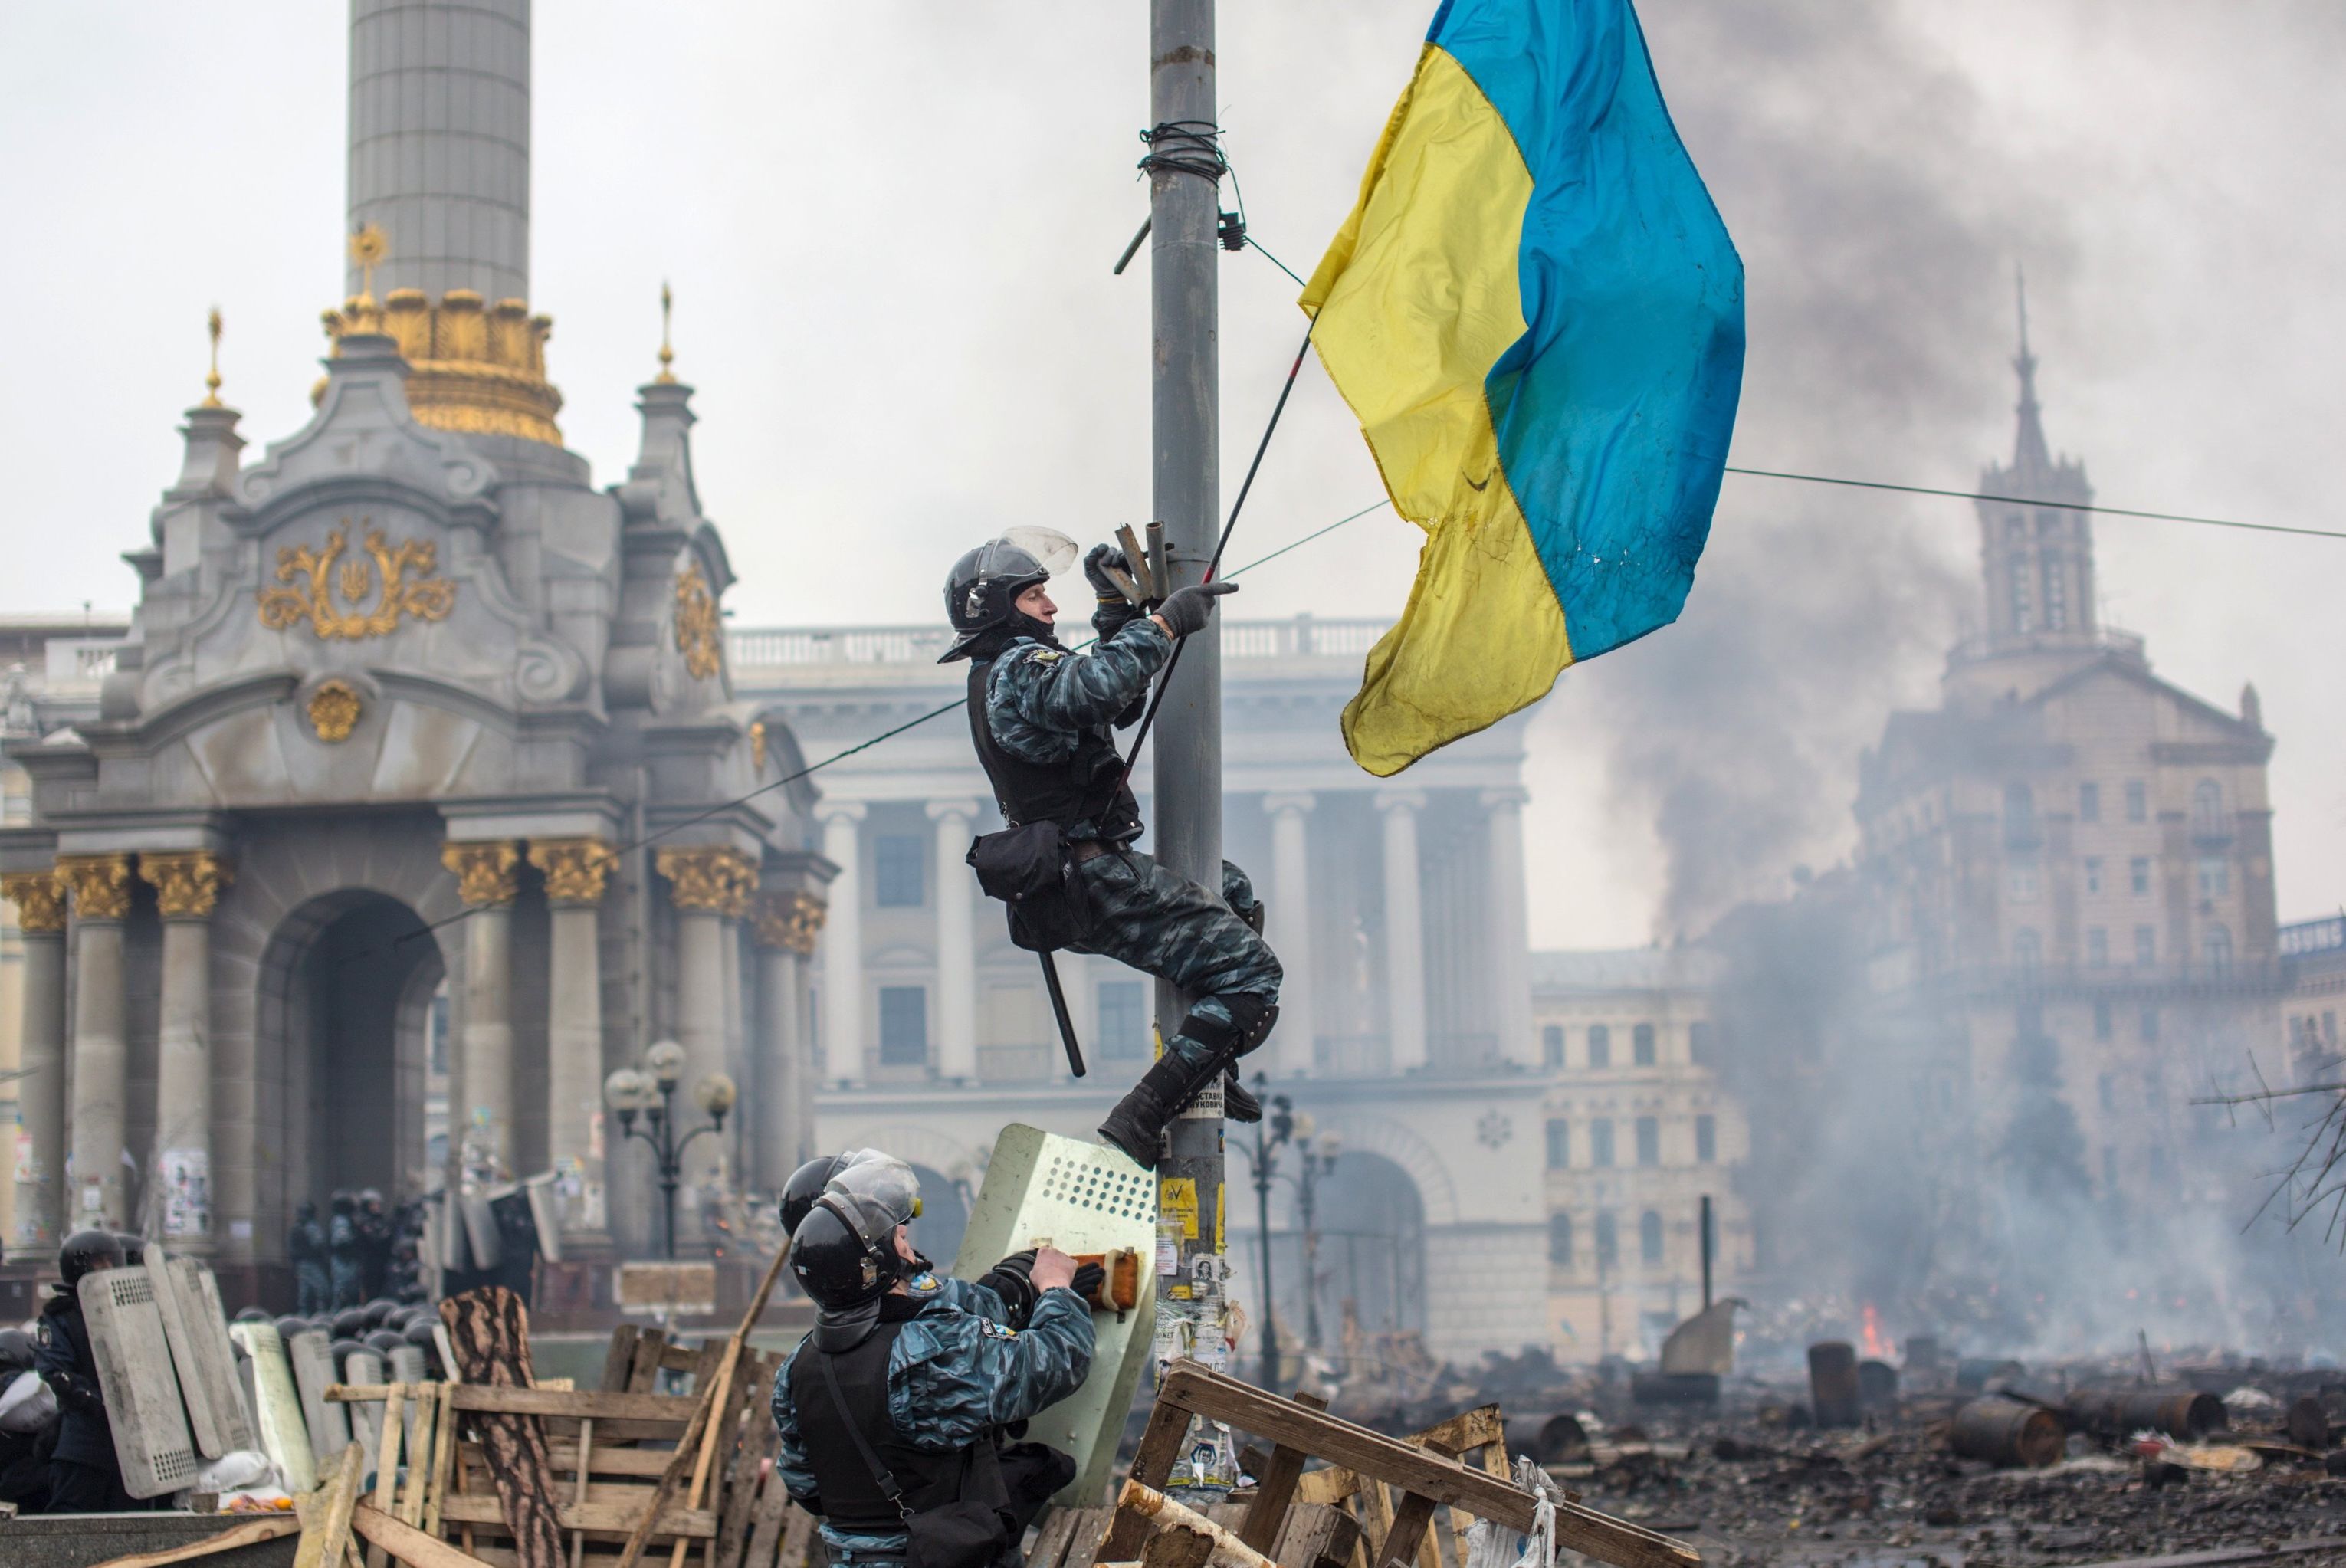 Сотрудники правоохранительных органов на площади Независимости в Киеве, где происходят столкновения митингующих и сотрудников милиции, 19 февраля 2014